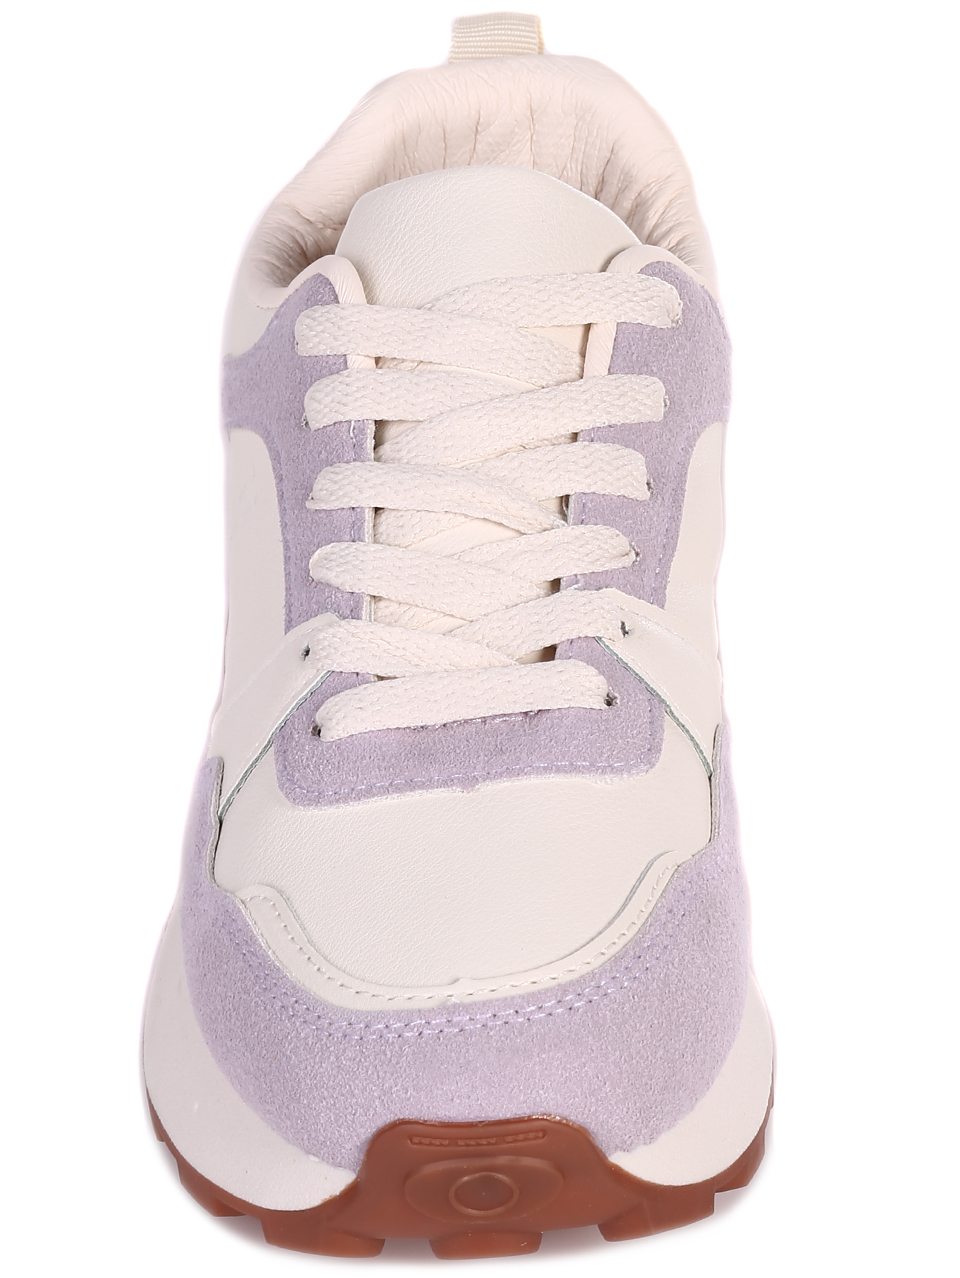 Ежедневни дамски комфортни обувки в лилаво и бежово 3U-23057 purple